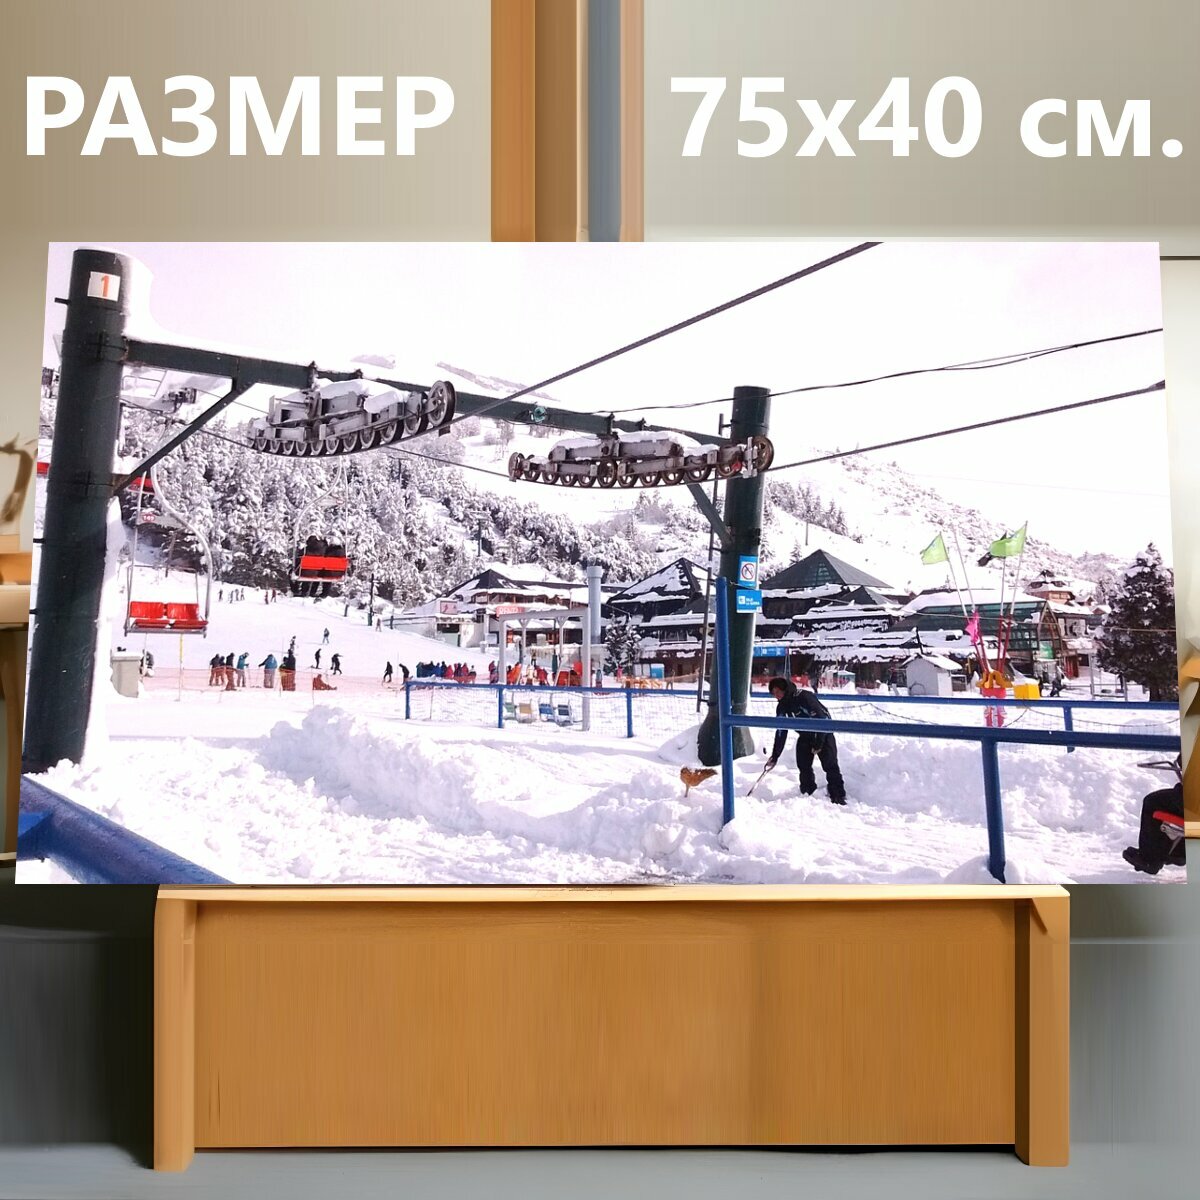 Картина на холсте "Кататься на лыжах, горнолыжный центр, барилоче" на подрамнике 75х40 см. для интерьера